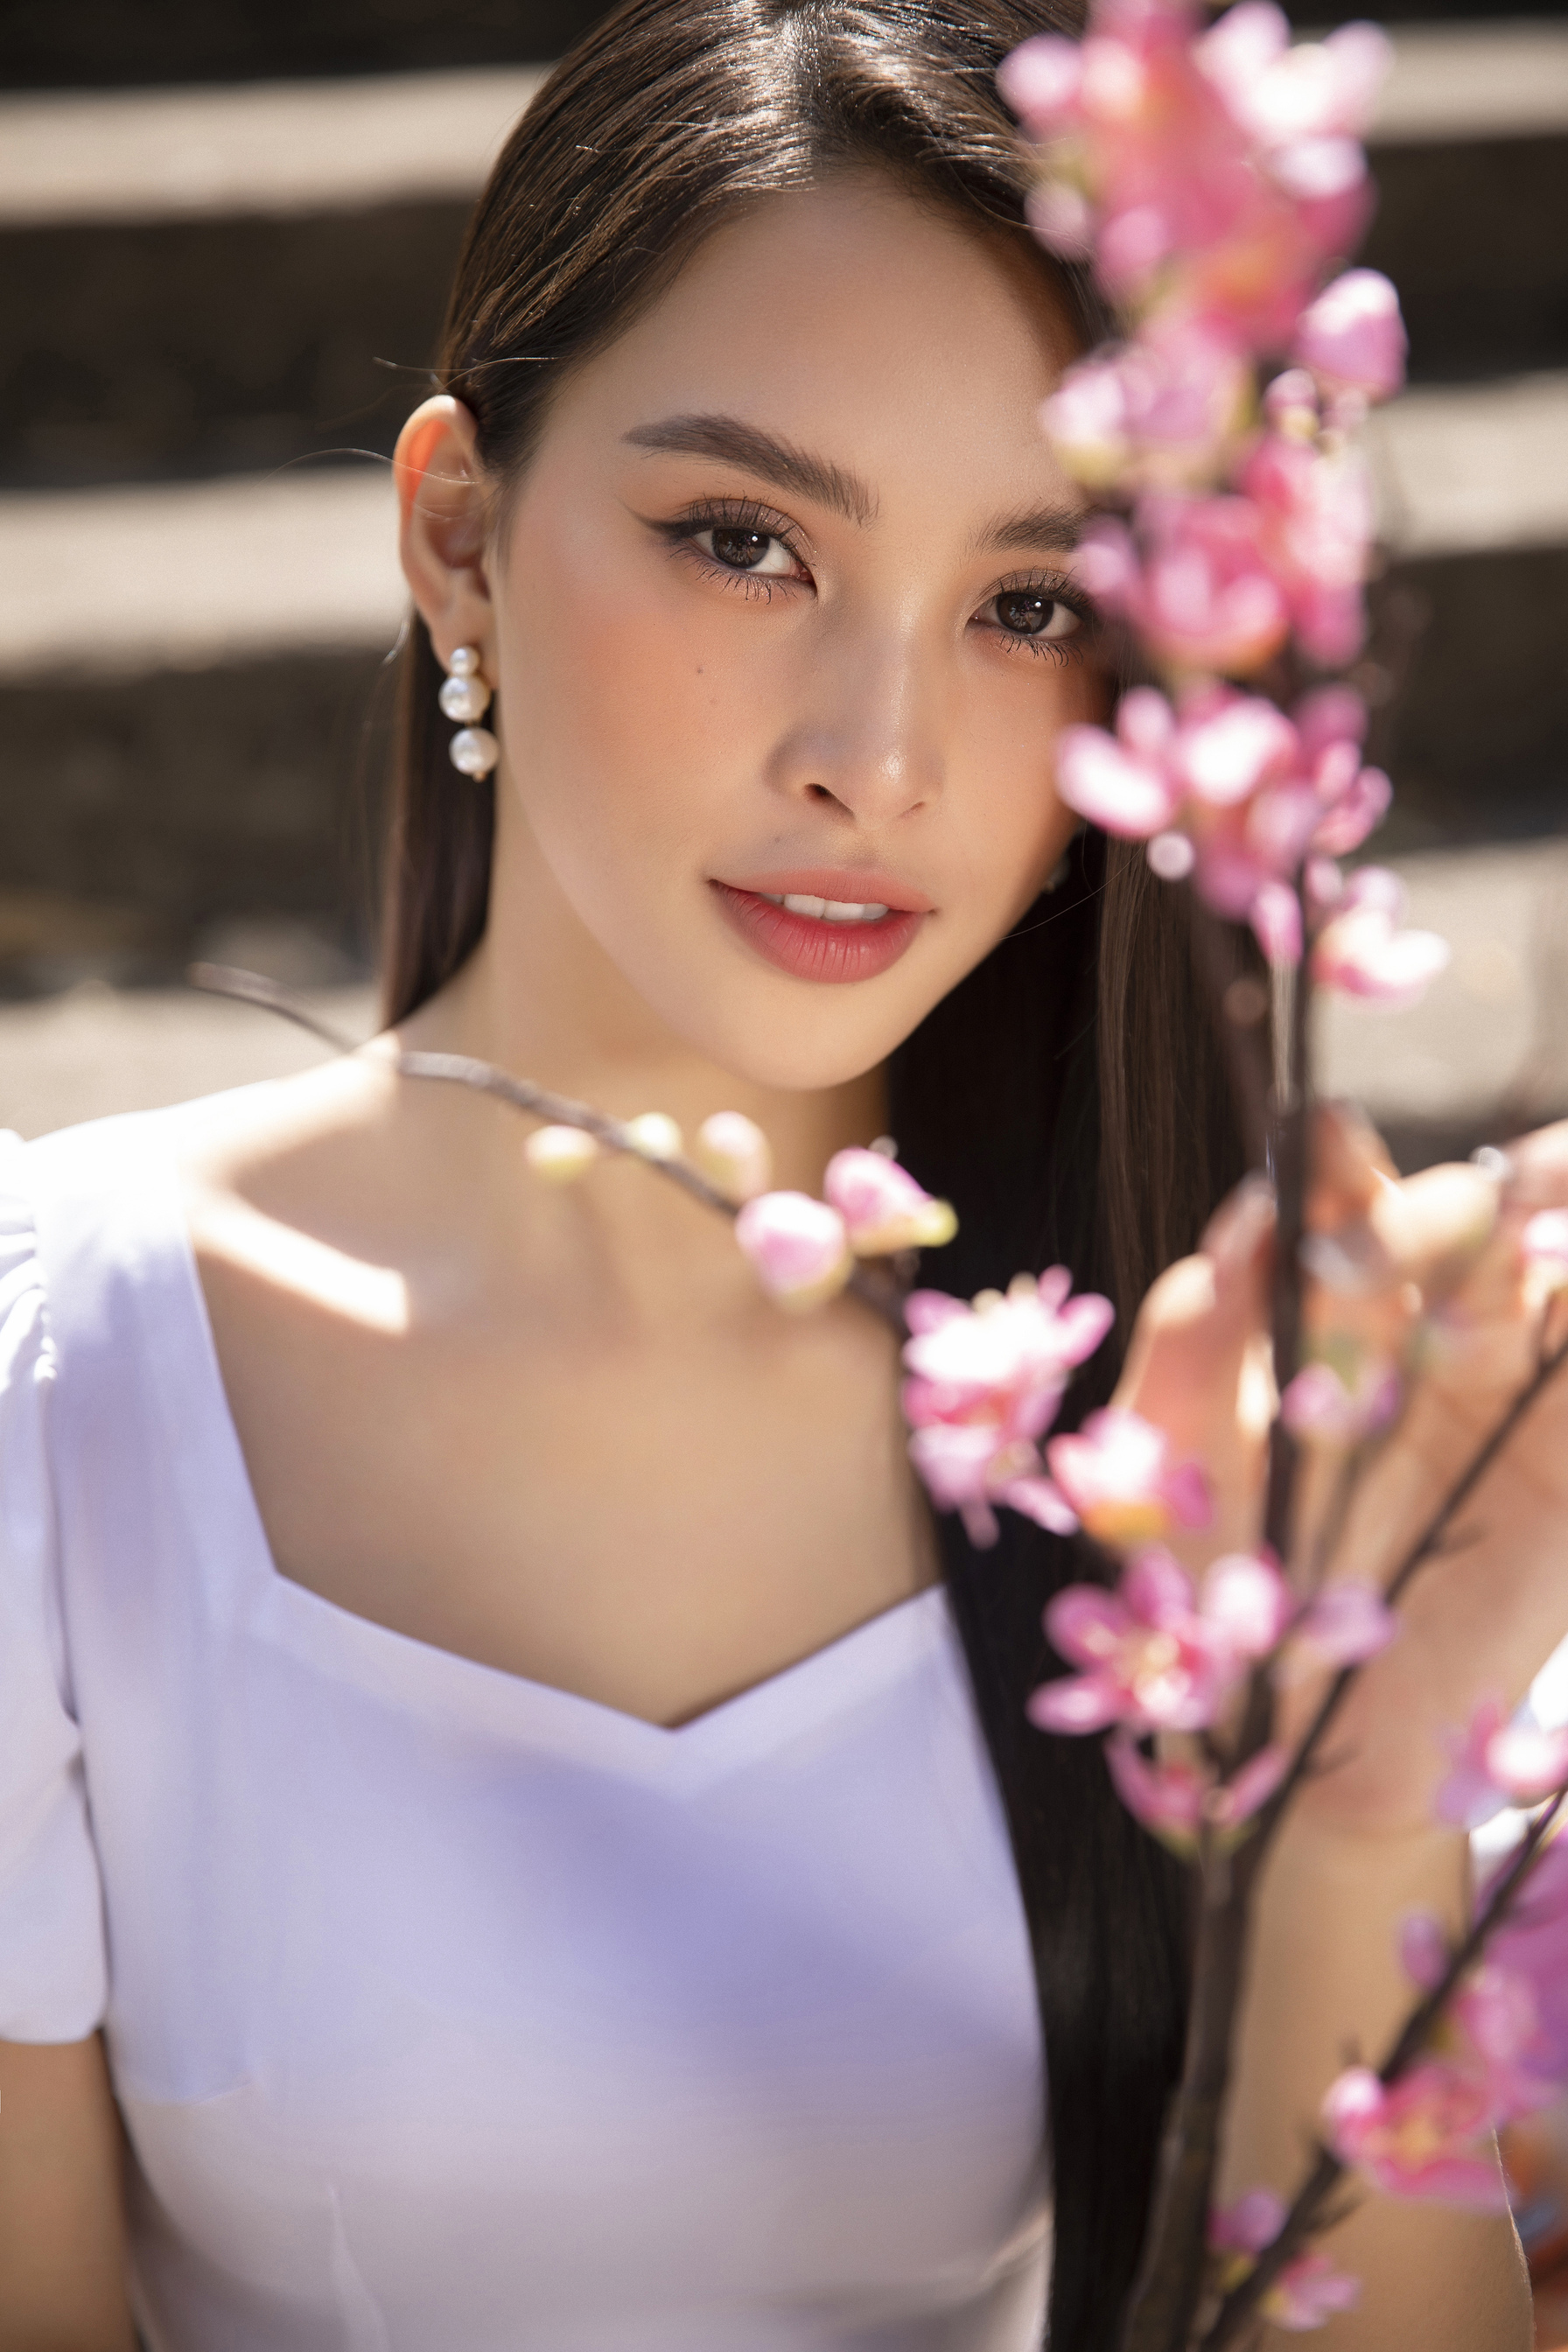 Vẻ đẹp ngọt ngào của Hoa hậu Tiểu Vy trong bộ ảnh mới